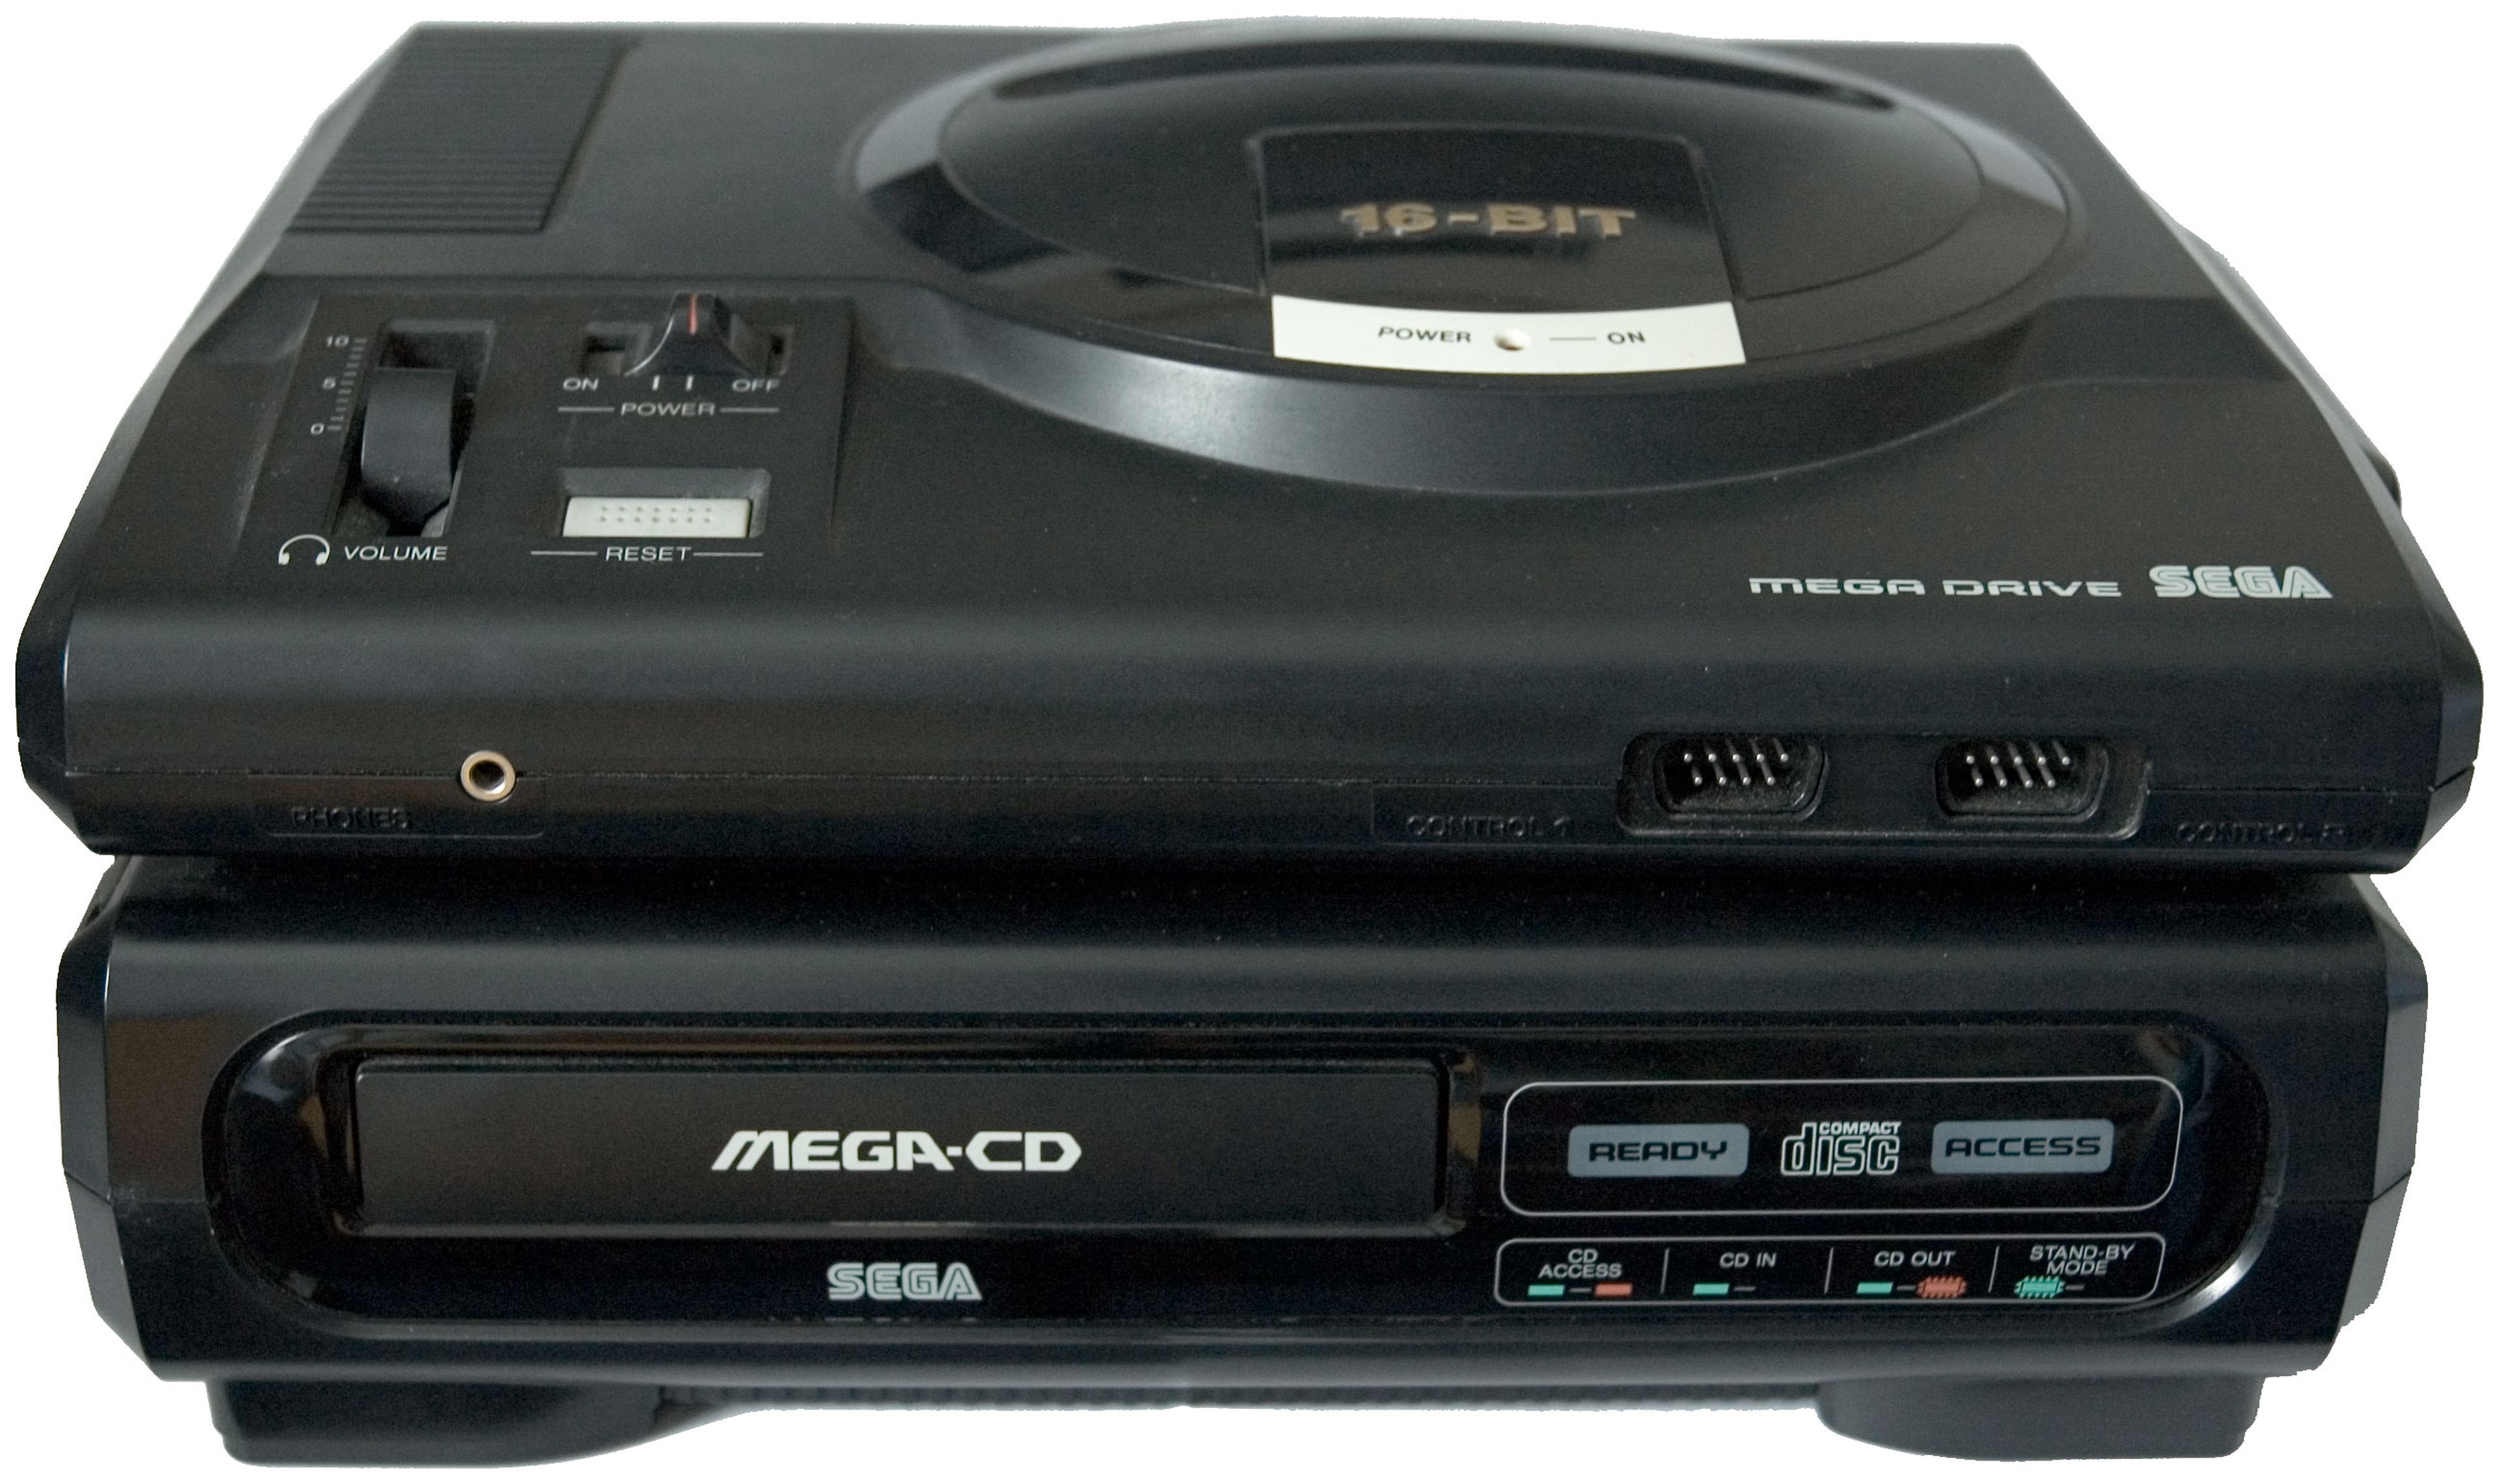 Hubo dos versiones, esta de aquí diseñada para la Mega Drive original, y uno más pequeño, diseñado para la también más pequeña Mega Drive II. Rizando el rizo, Sega lanzó el Multimega, que integraba la consola y el lector de CD en el mismo cacharro.